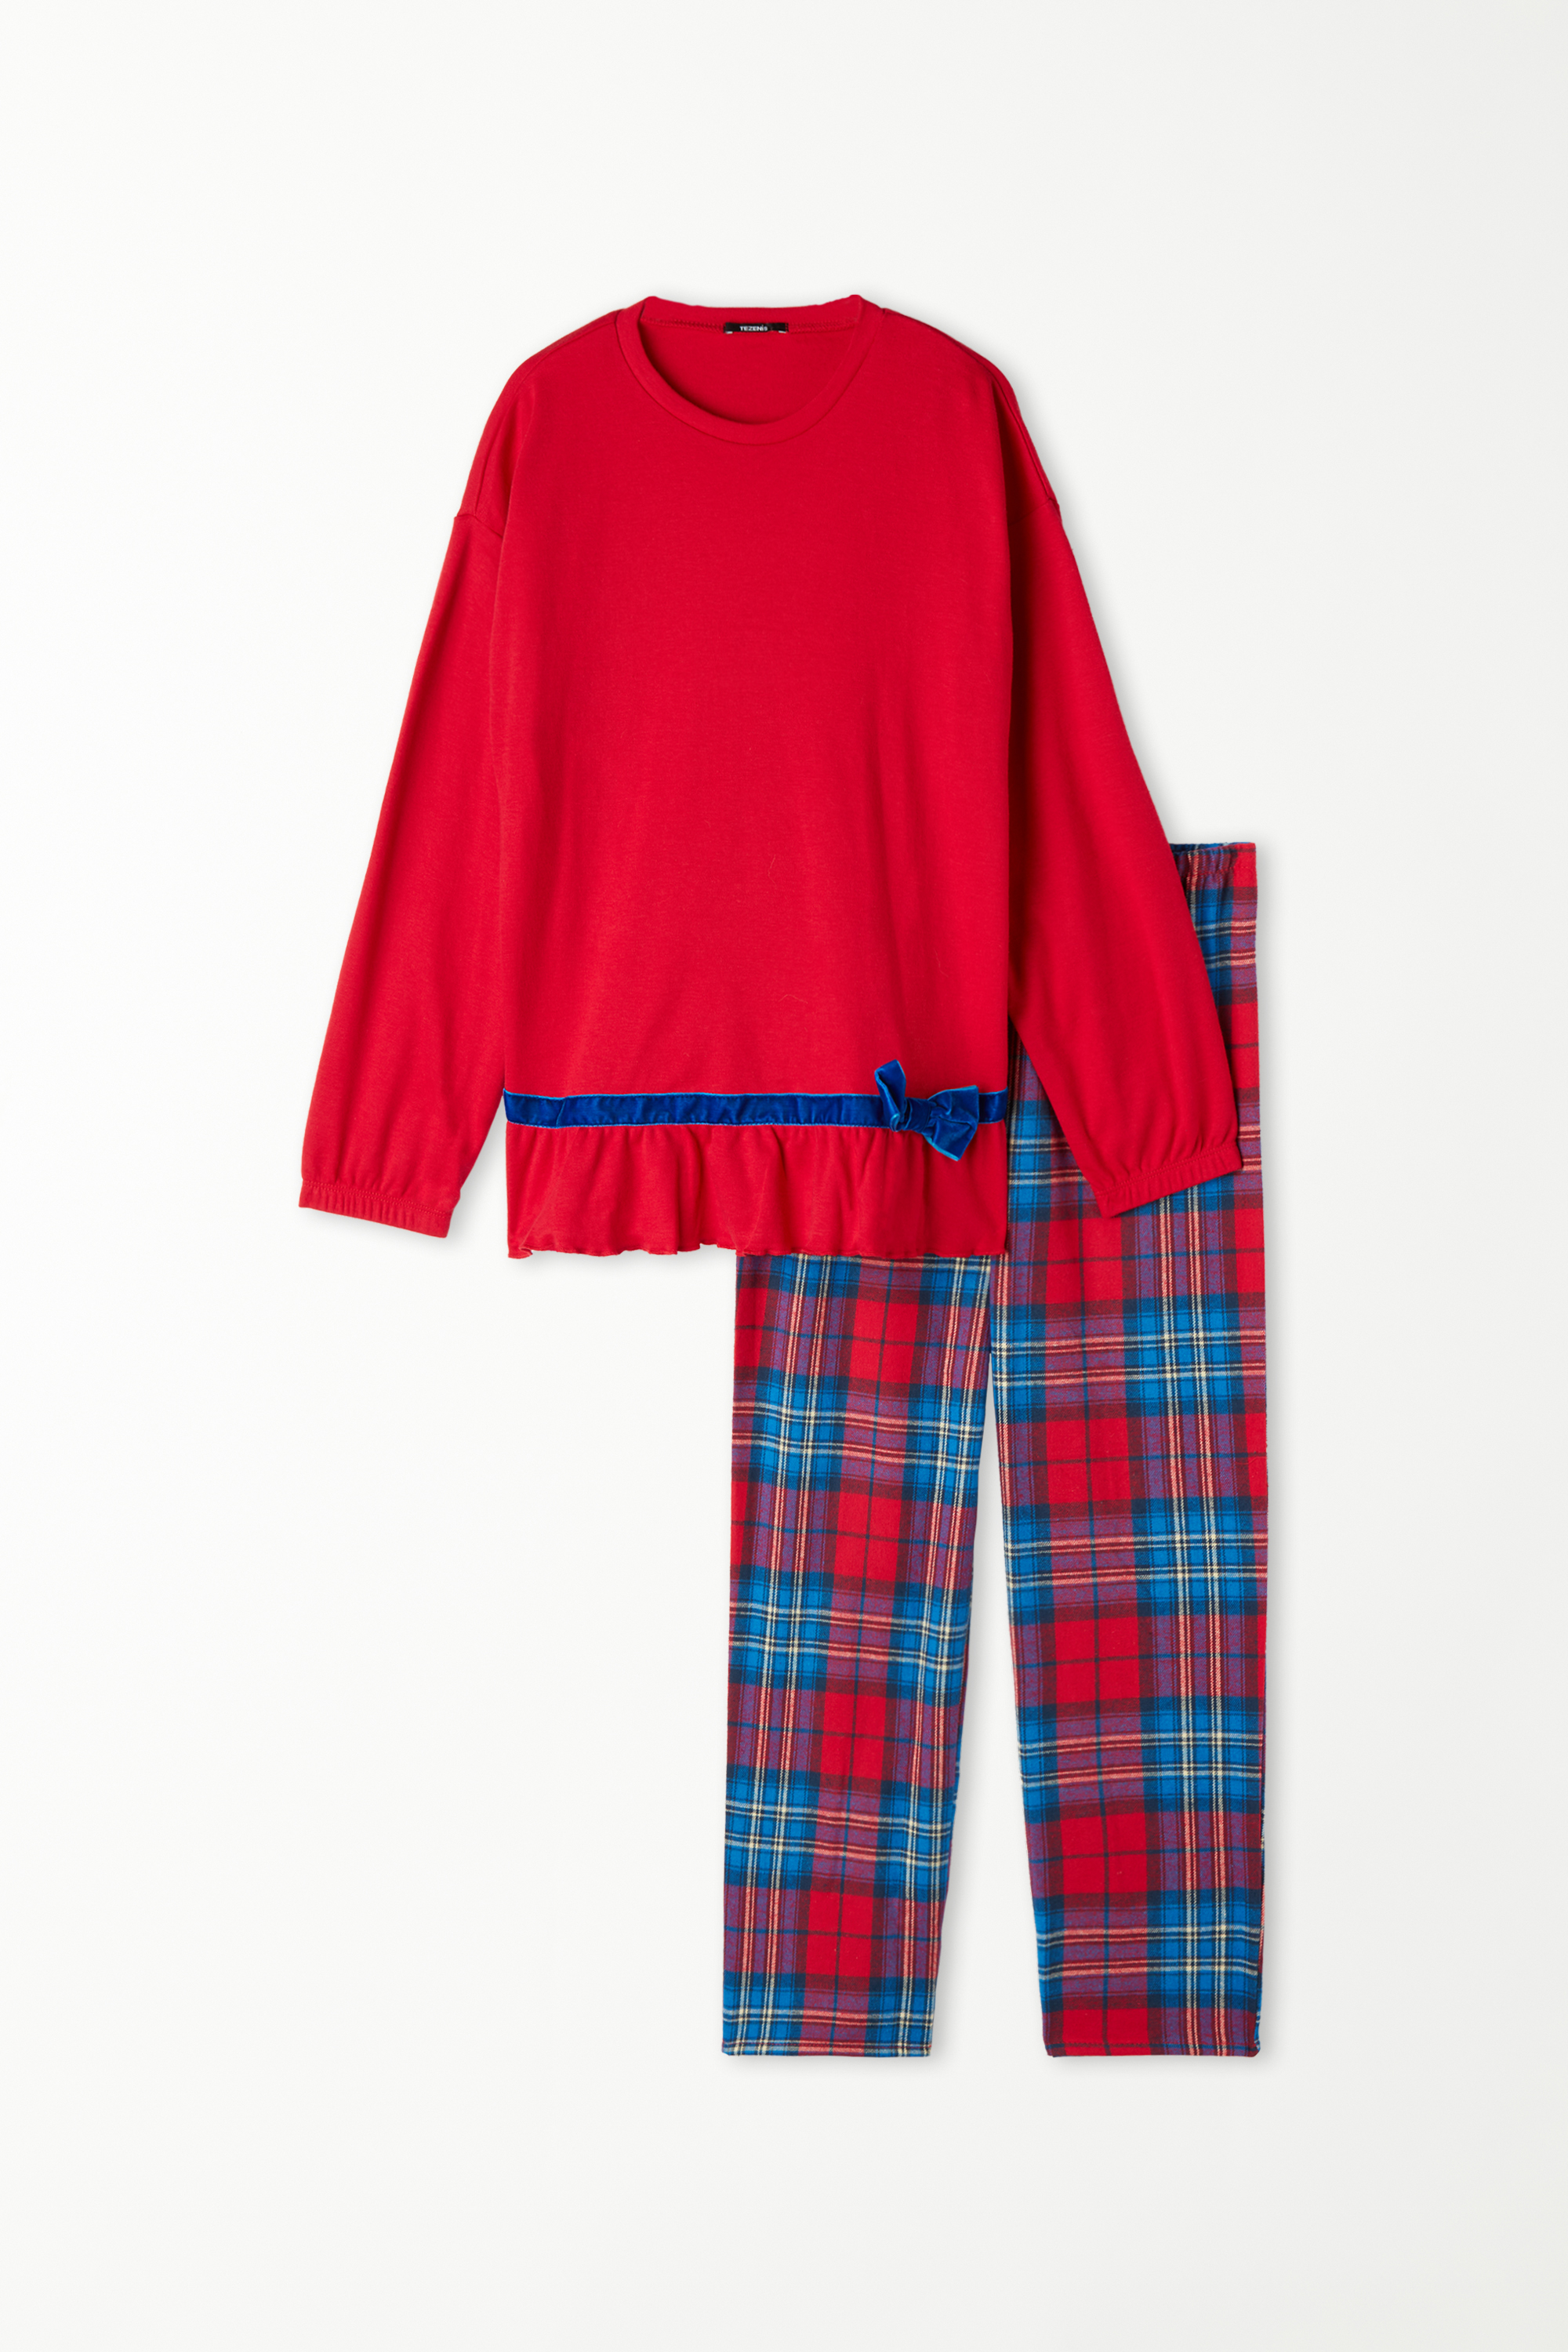 Pijama Lungă din Bumbac și Flanelă cu Fundă Fete